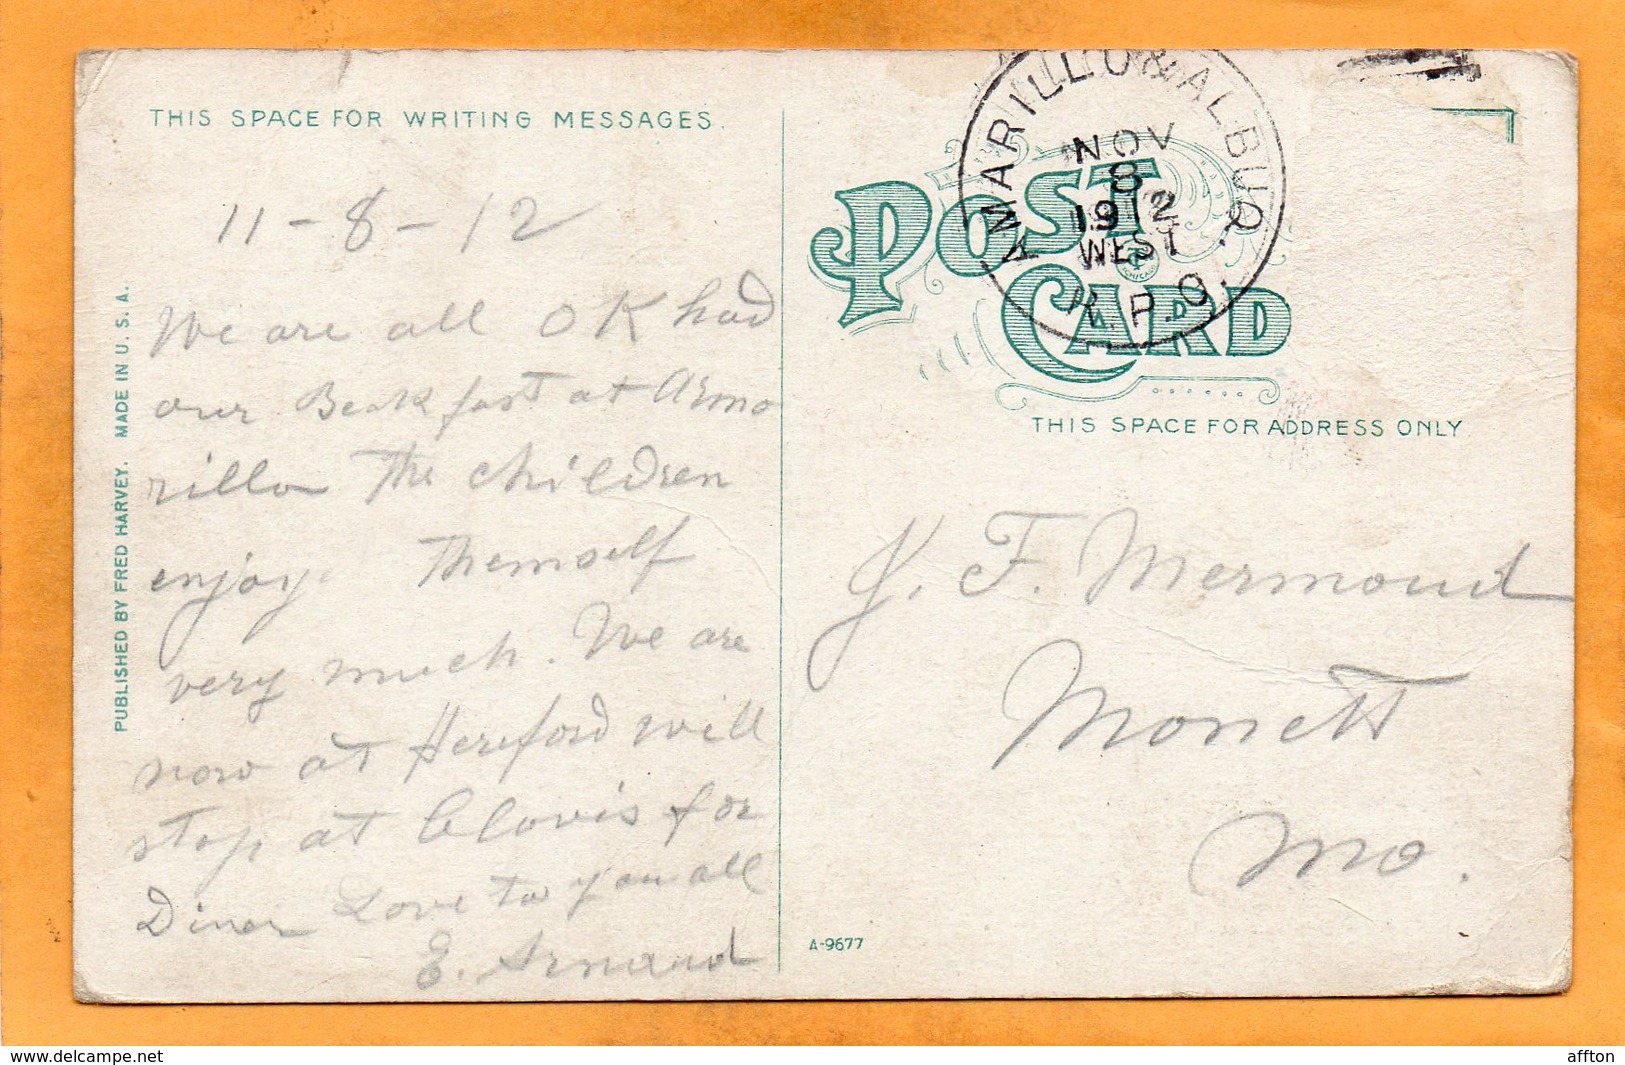 Amarillo Tex 1912 Postcard - Amarillo